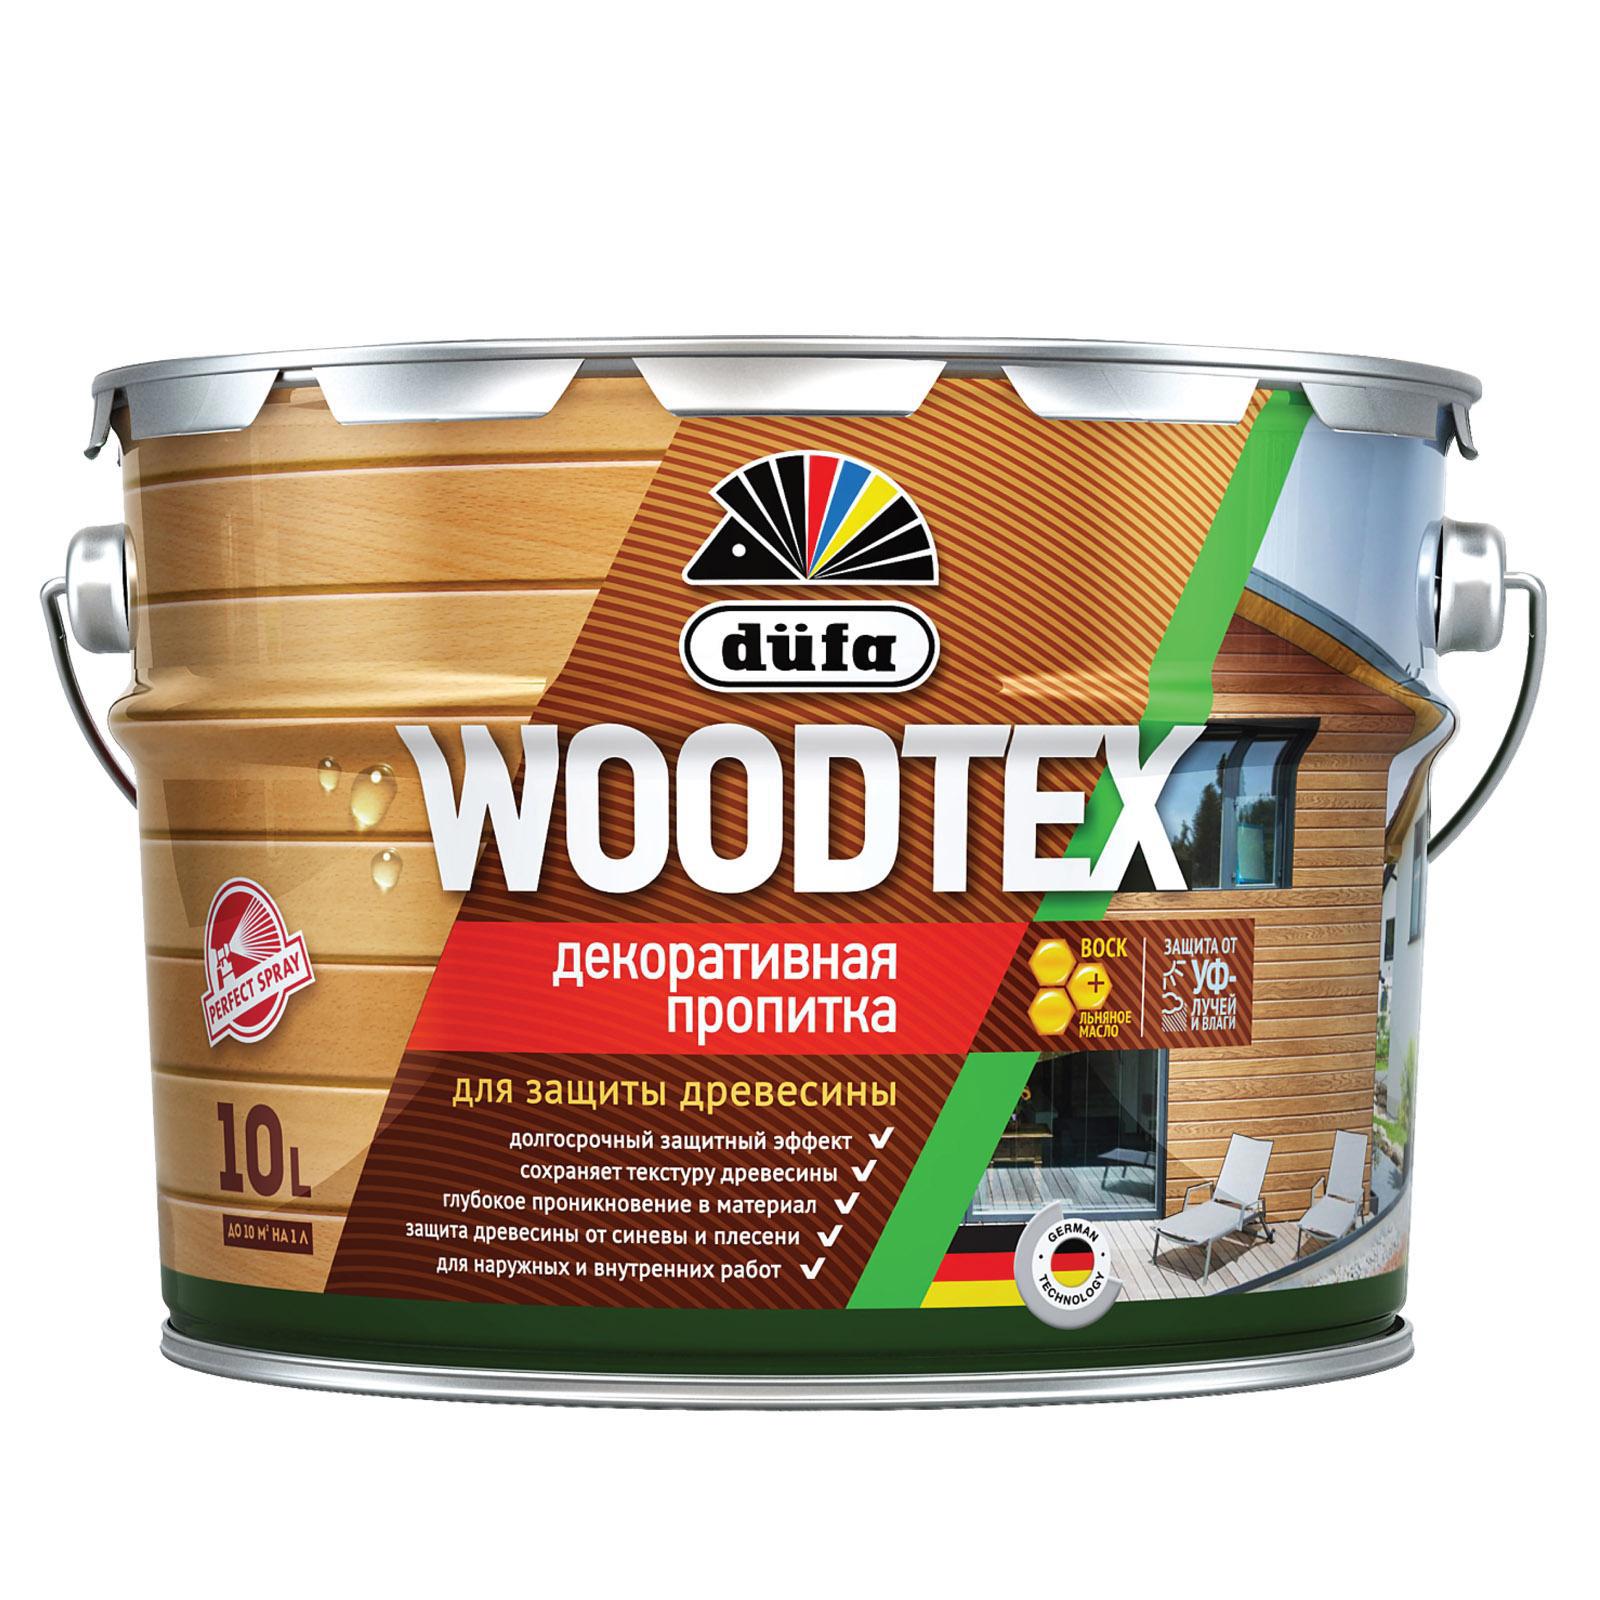 90194538 Пропитка декоративная для защиты древесины алкидная Woodtex орех 10 л STLM-0128470 DUFA